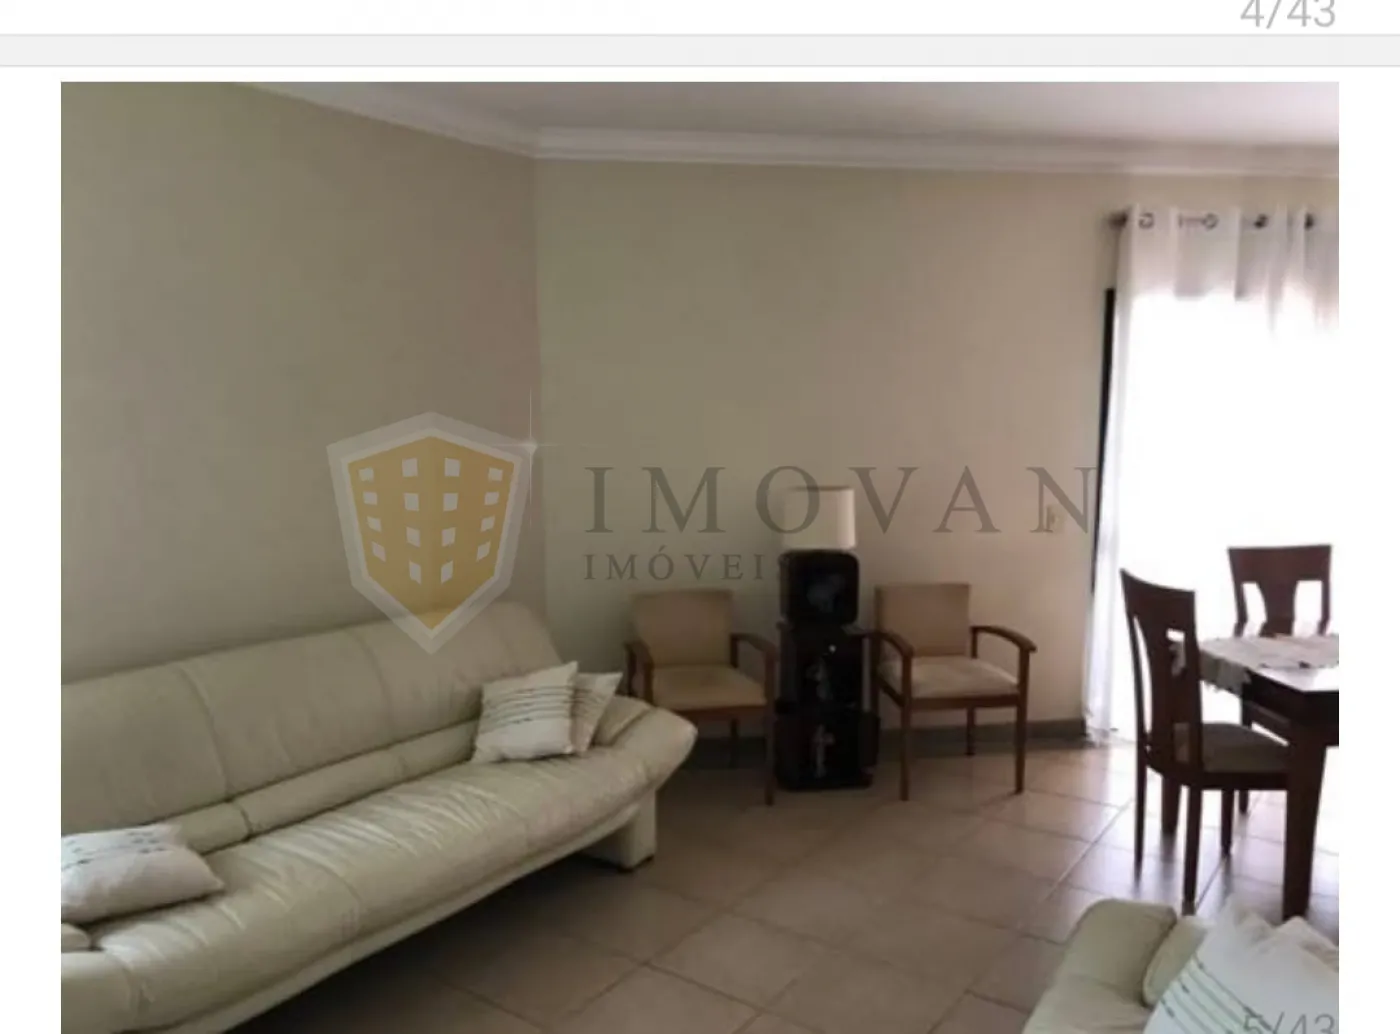 Comprar Apartamento / Padrão em Ribeirão Preto R$ 650.000,00 - Foto 4